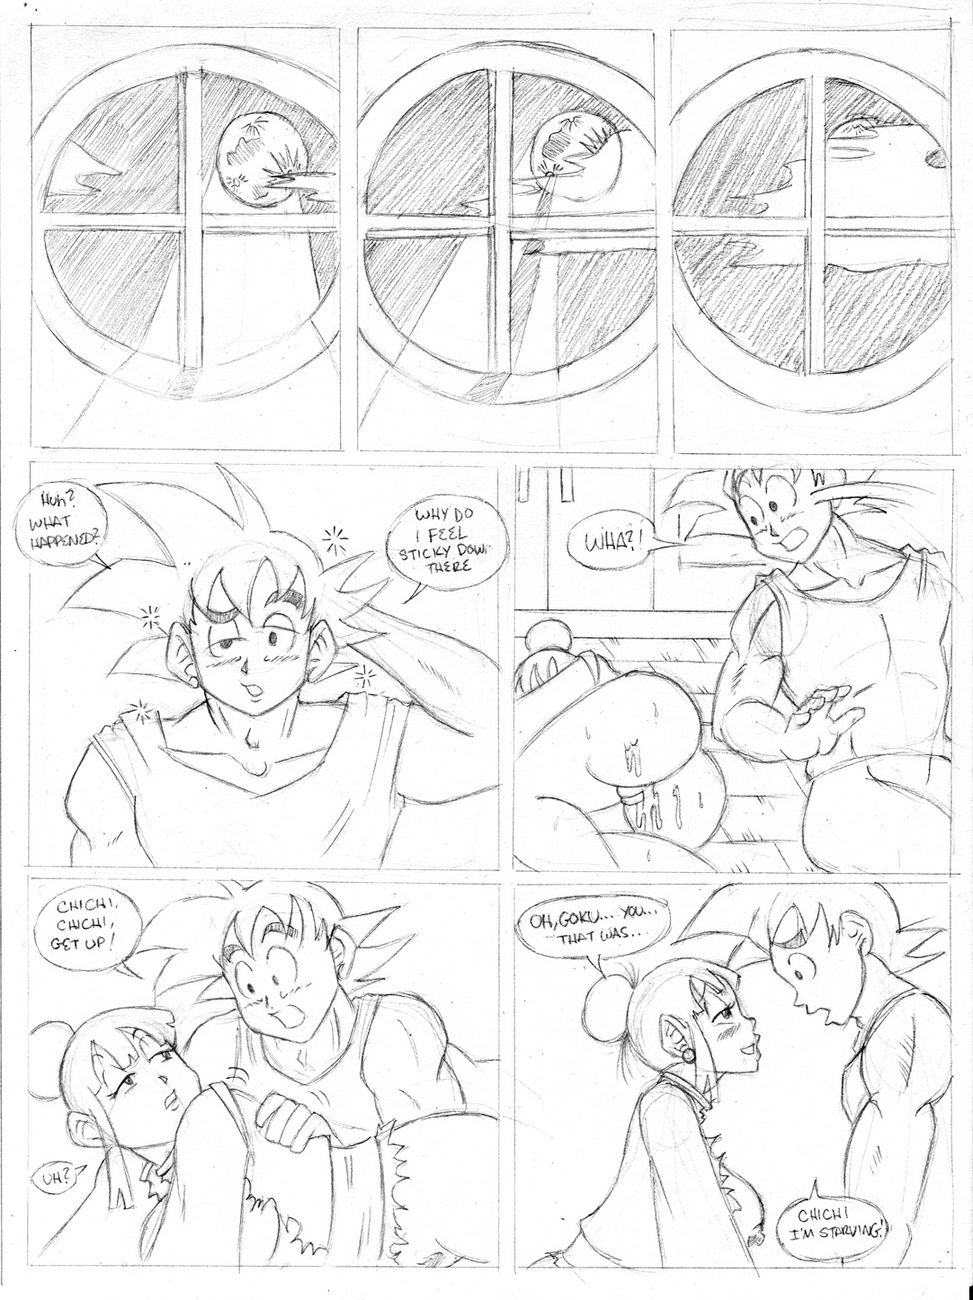 ドラゴン シチュー page 1